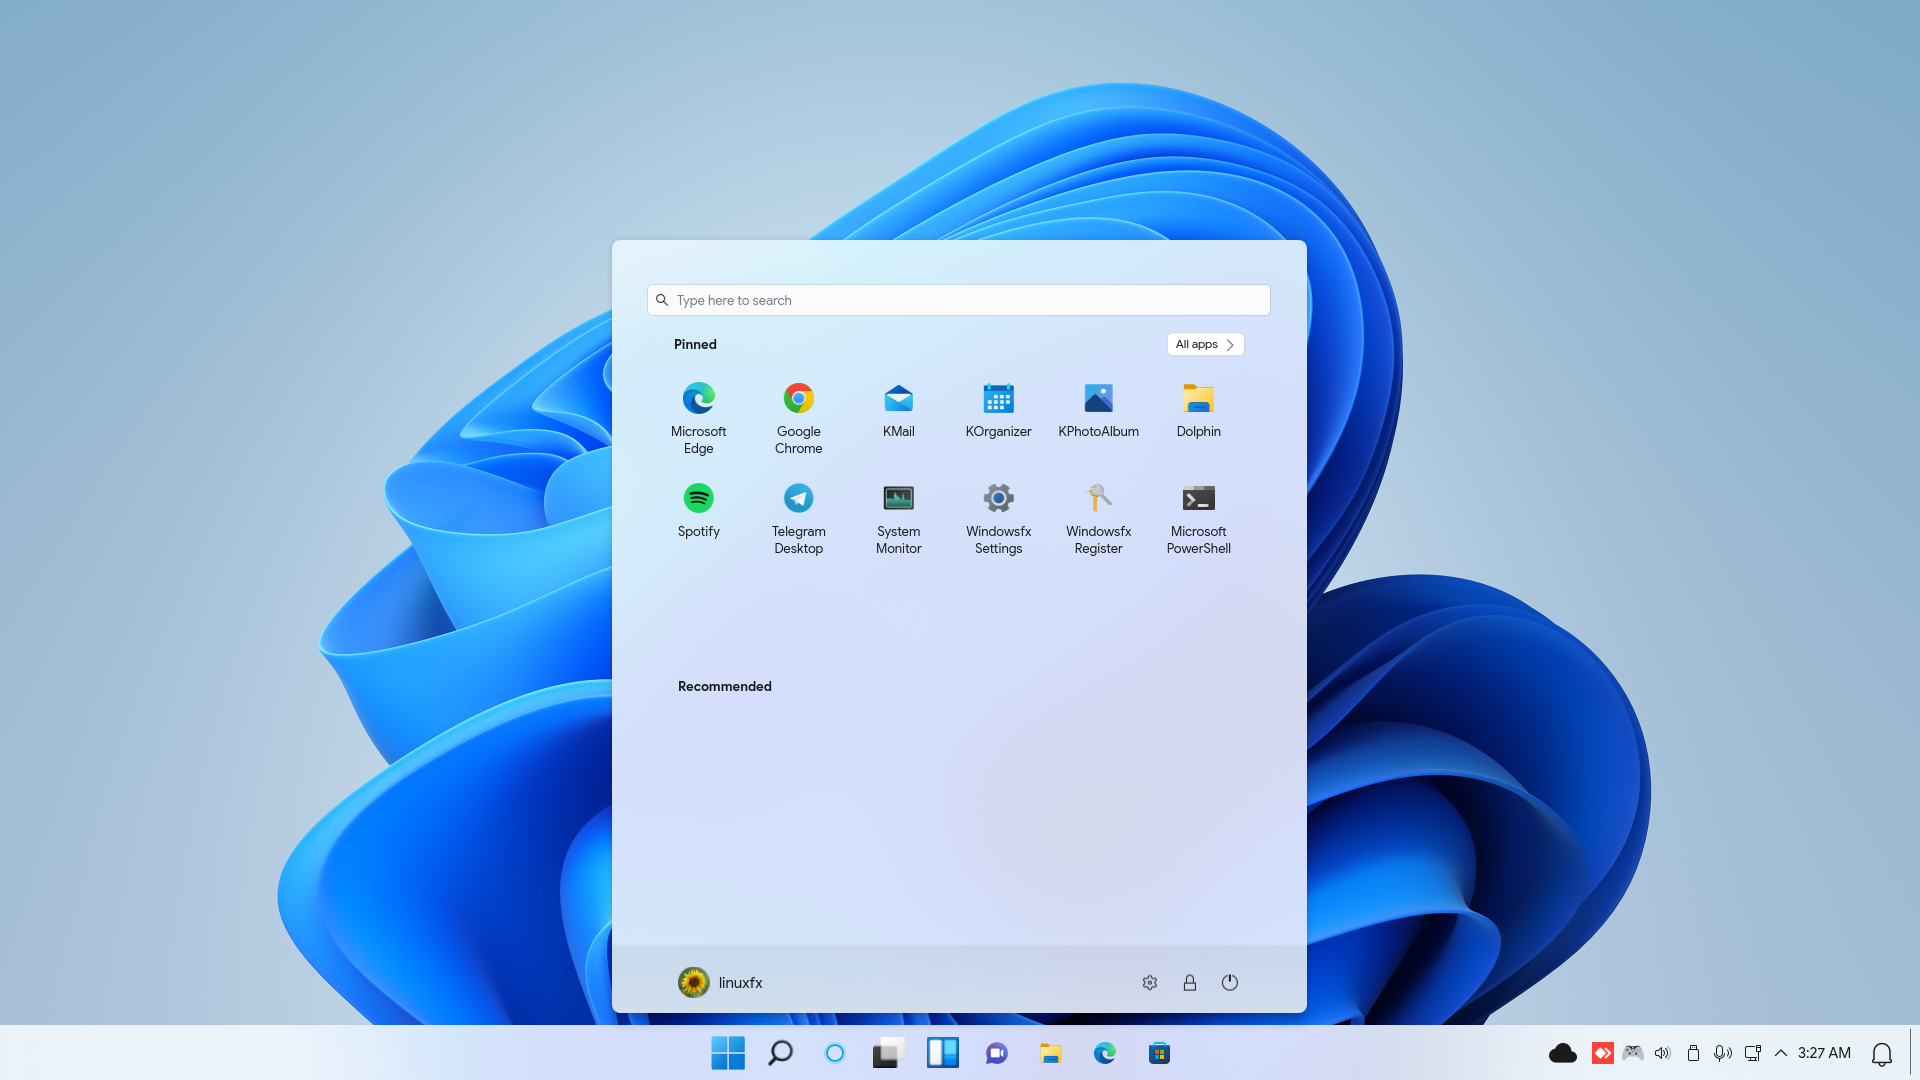 Distribuição Windowsfx 11, do grupo LinuxFX, assemelha-se ao novo sistema operacional da Microsoft, mas oferece recursos únicos do Linux.